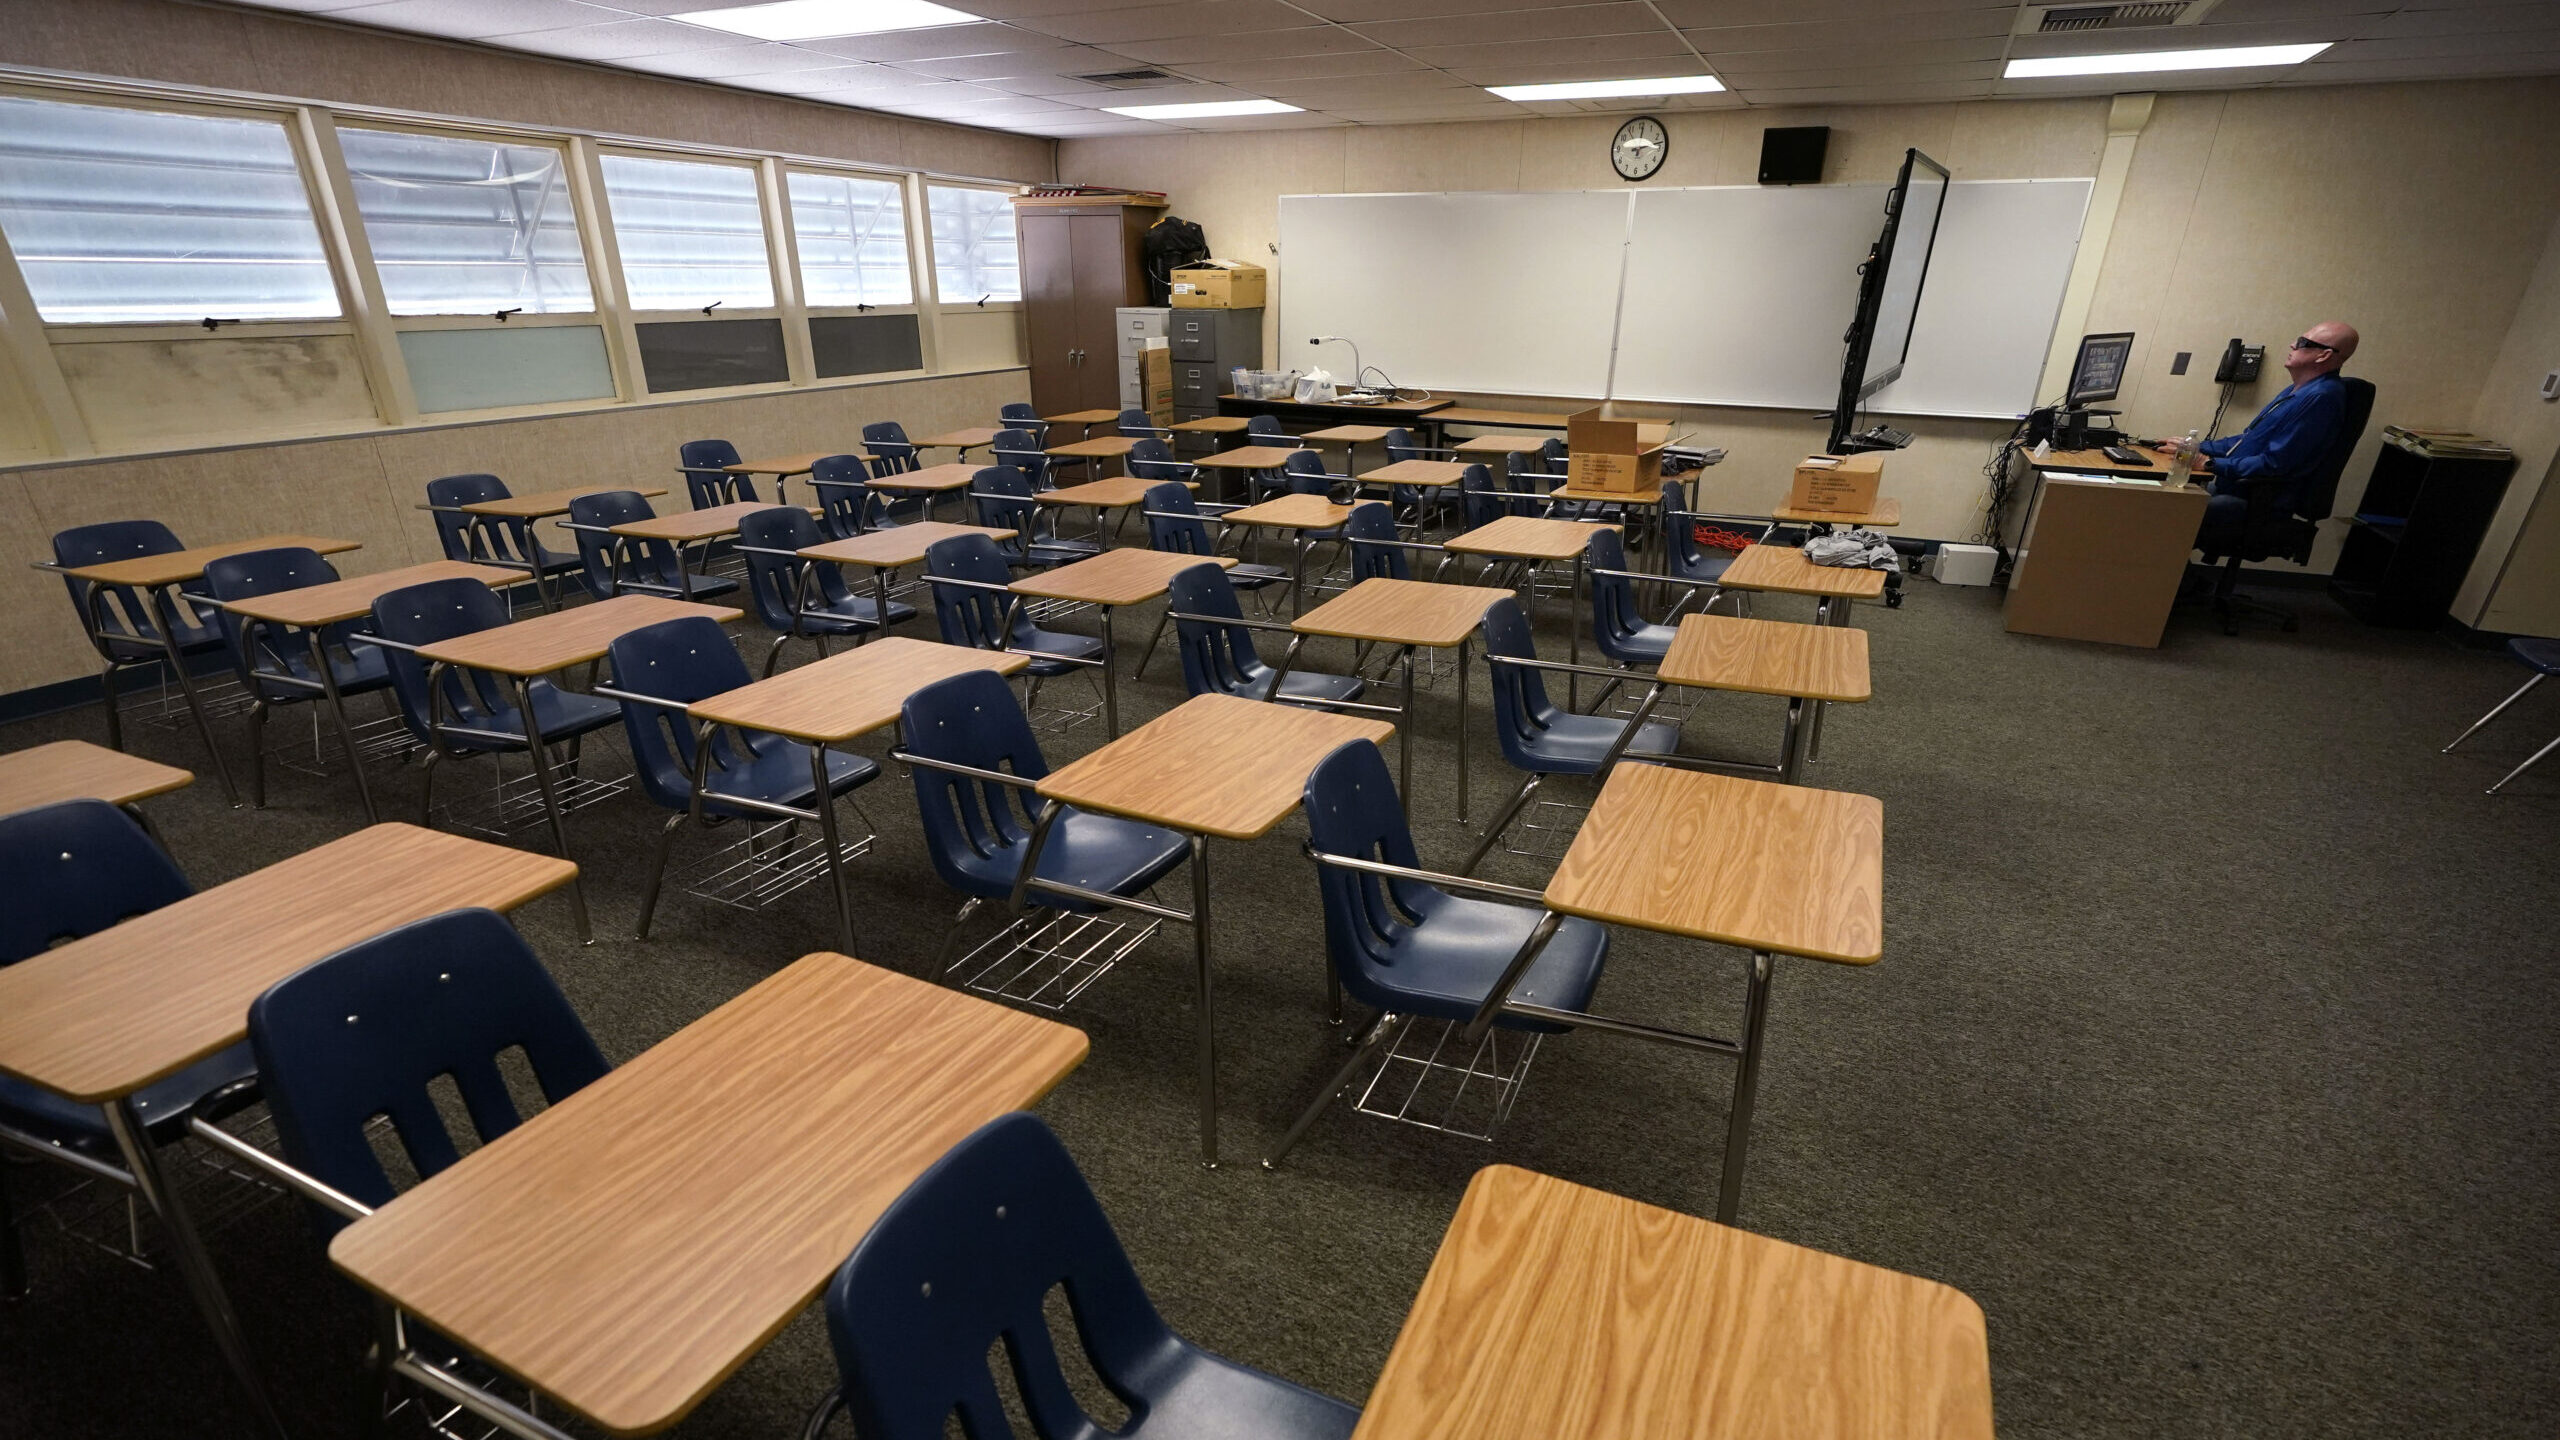 a classroom full of empty desks...